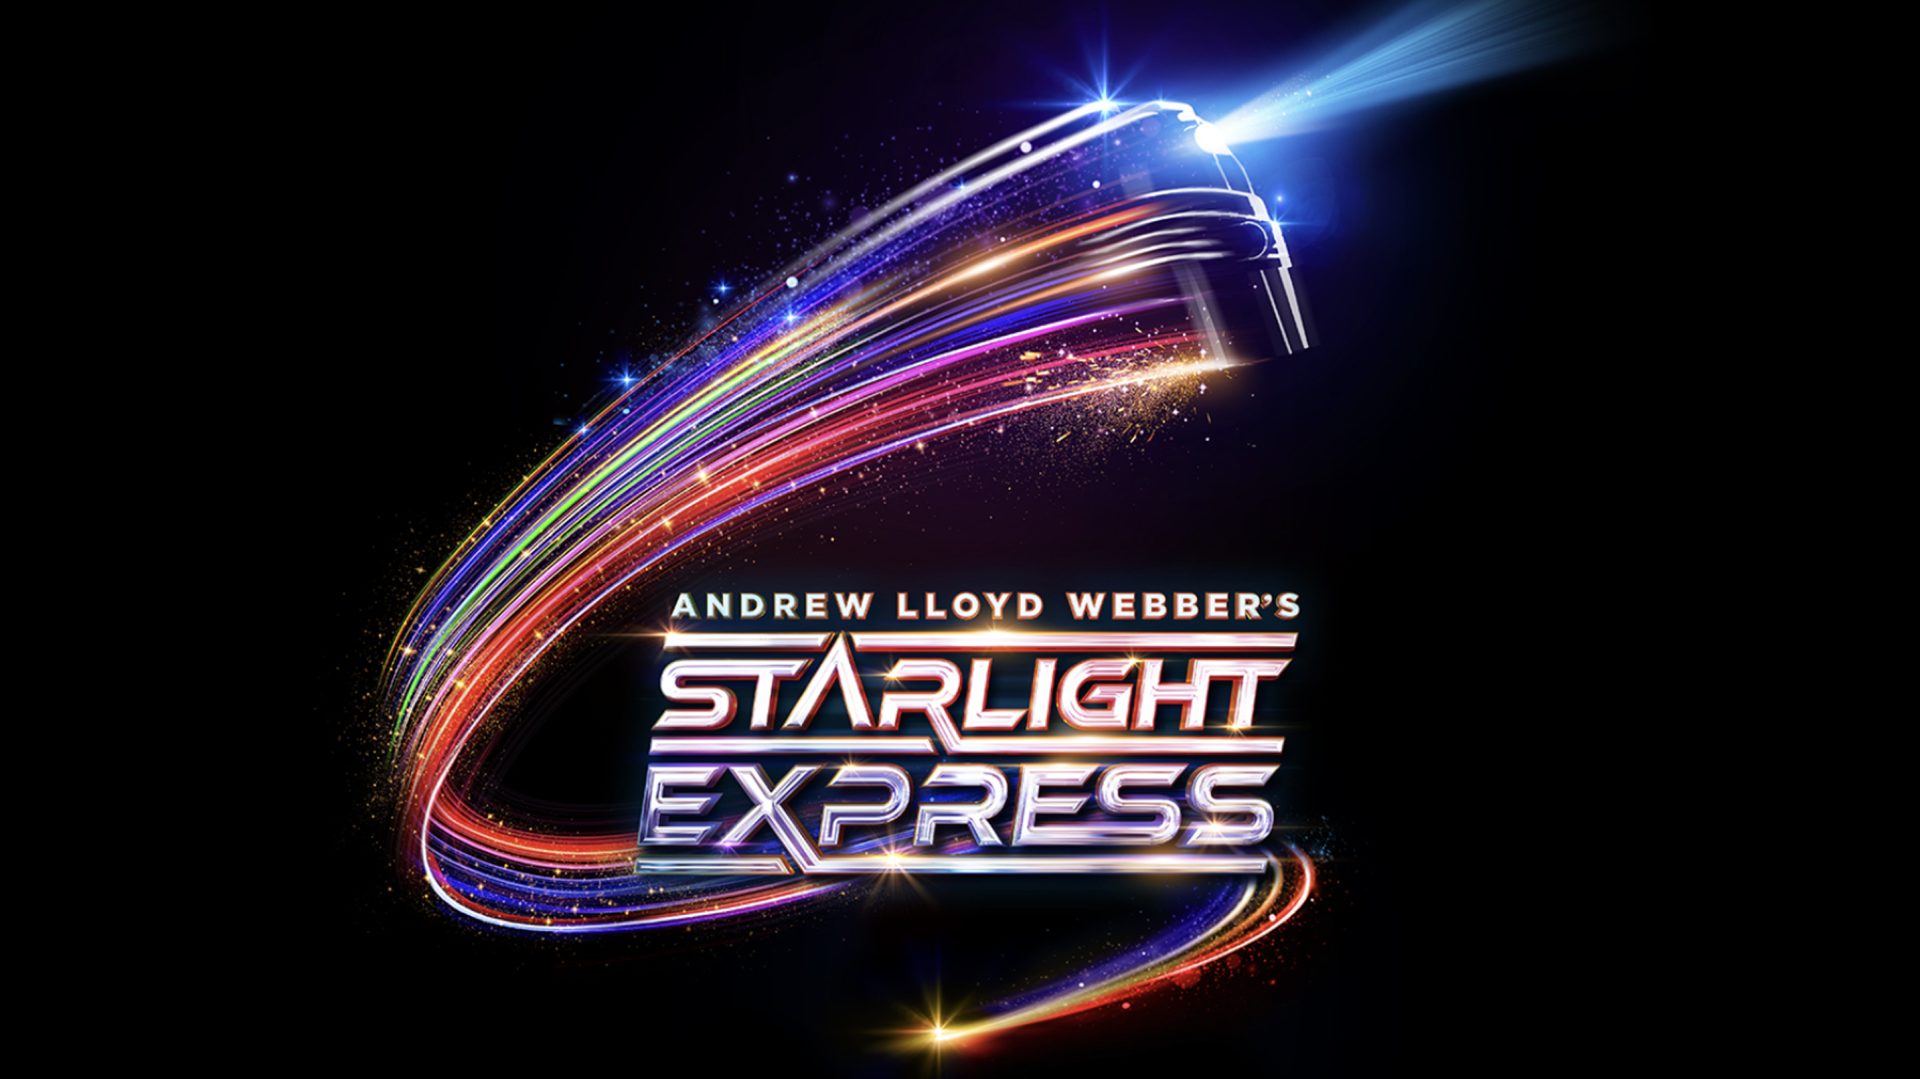 Lloyd Webber’s Starlight Express skates into a specially designed Starlight Auditorium